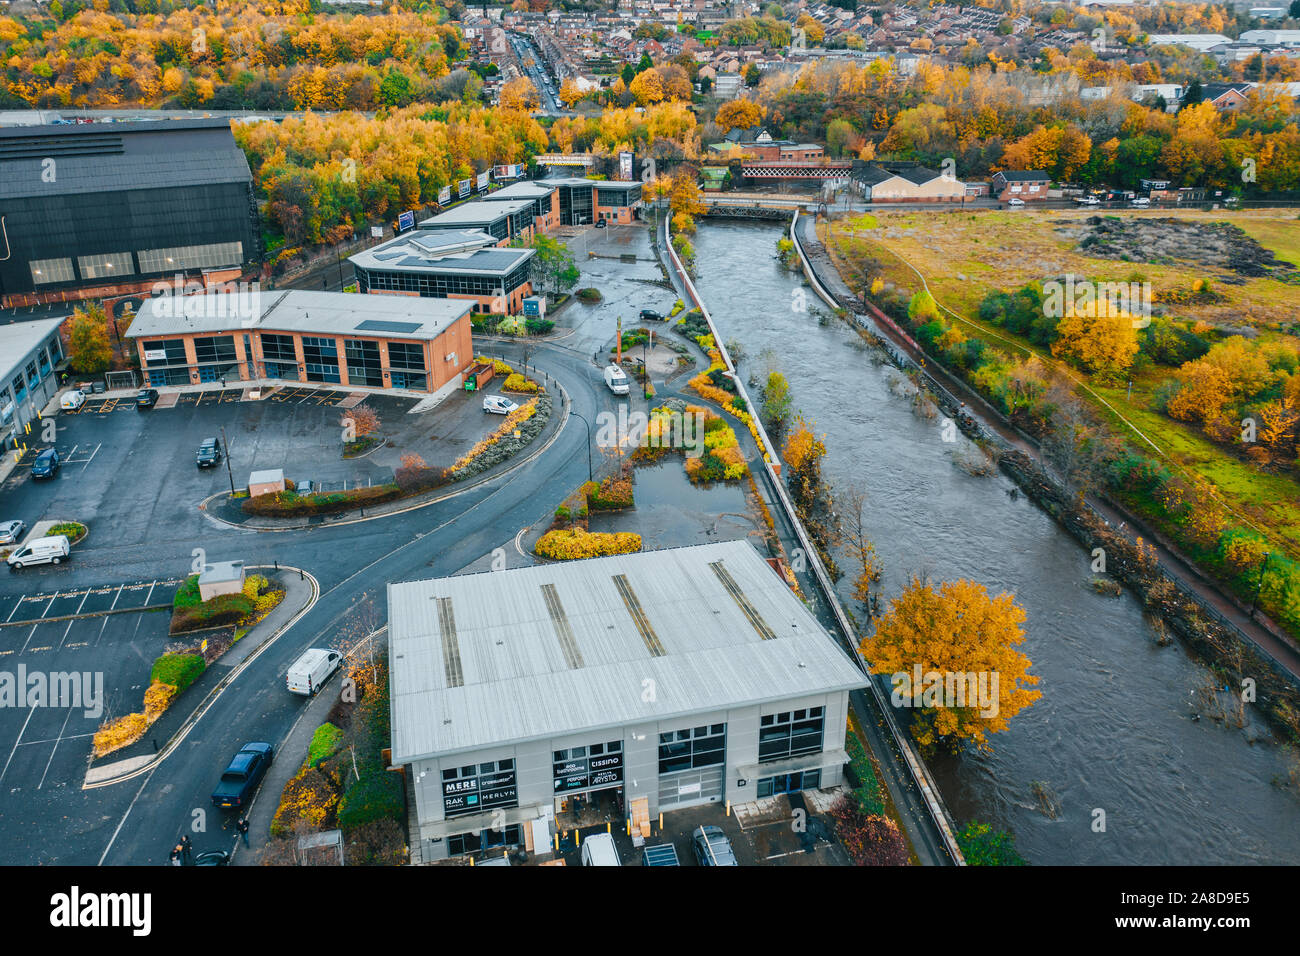 Sheffield, Reino Unido - 8 de noviembre de 2019: imágenes aéreas de los daños causados por el Río Don revienta sus bancos en las inundaciones de noviembre cerca de Meadowhall Foto de stock